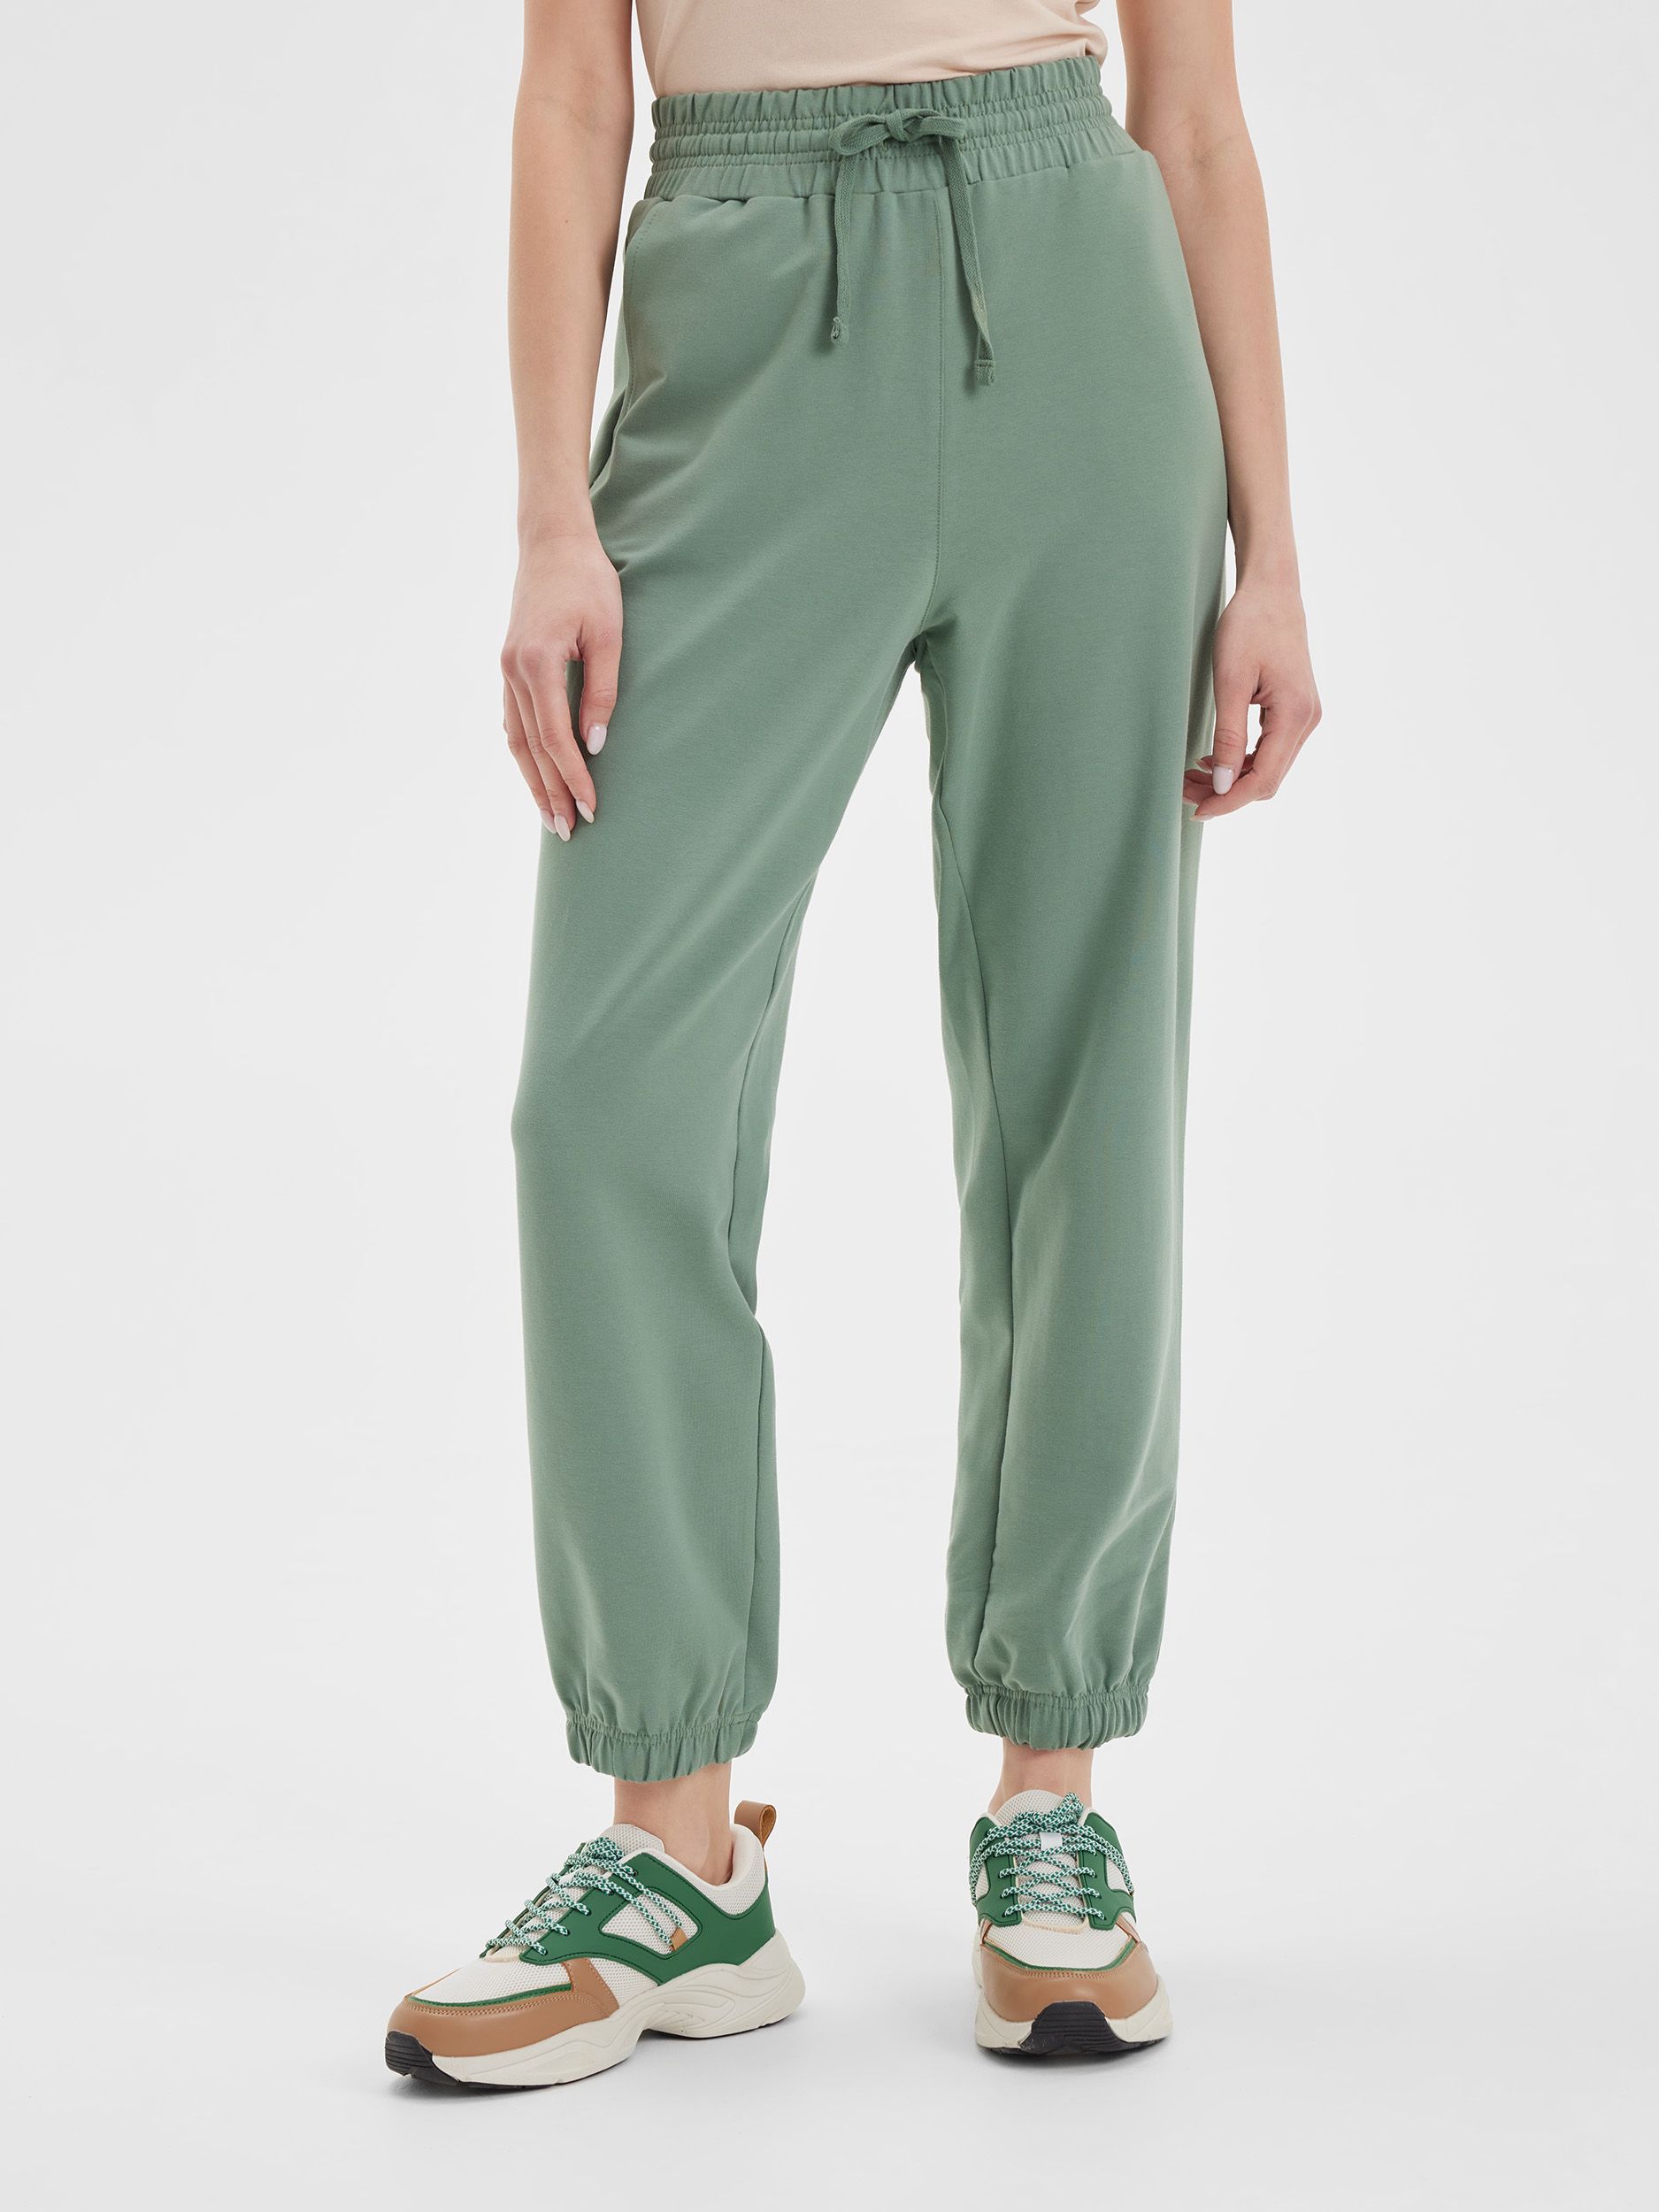 Спортивные брюки женские LAINA S21-W1-754 зеленые 44 RU